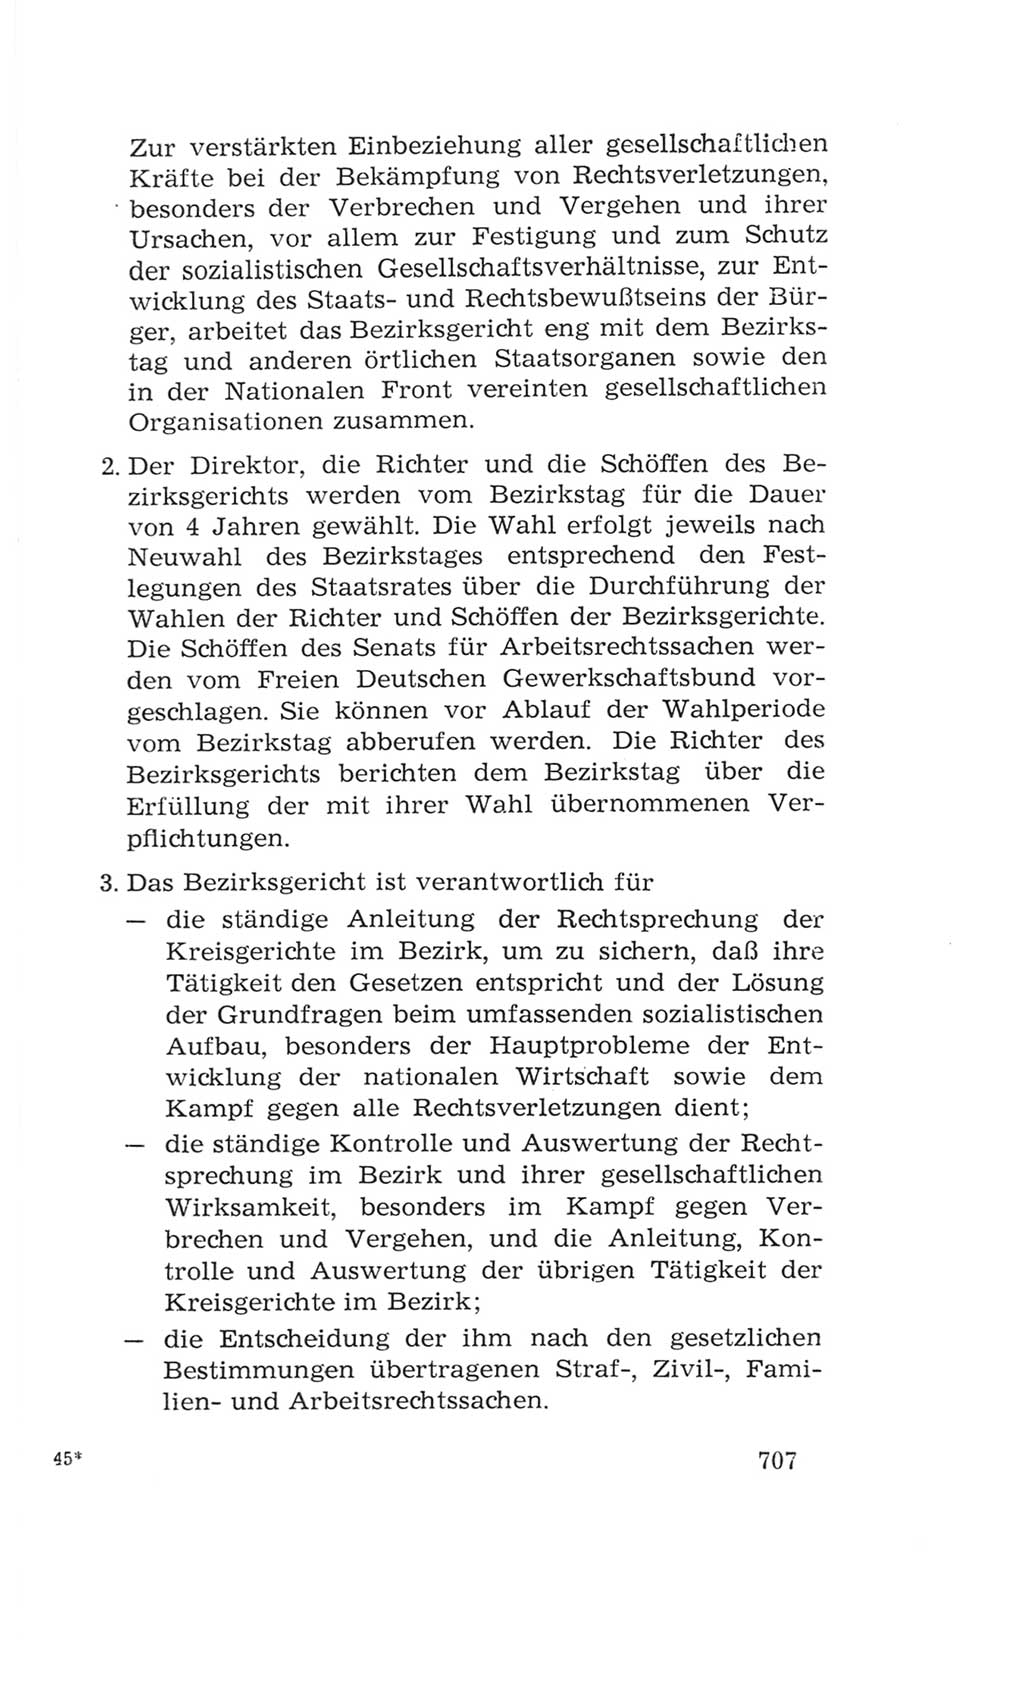 Volkskammer (VK) der Deutschen Demokratischen Republik (DDR), 4. Wahlperiode 1963-1967, Seite 707 (VK. DDR 4. WP. 1963-1967, S. 707)